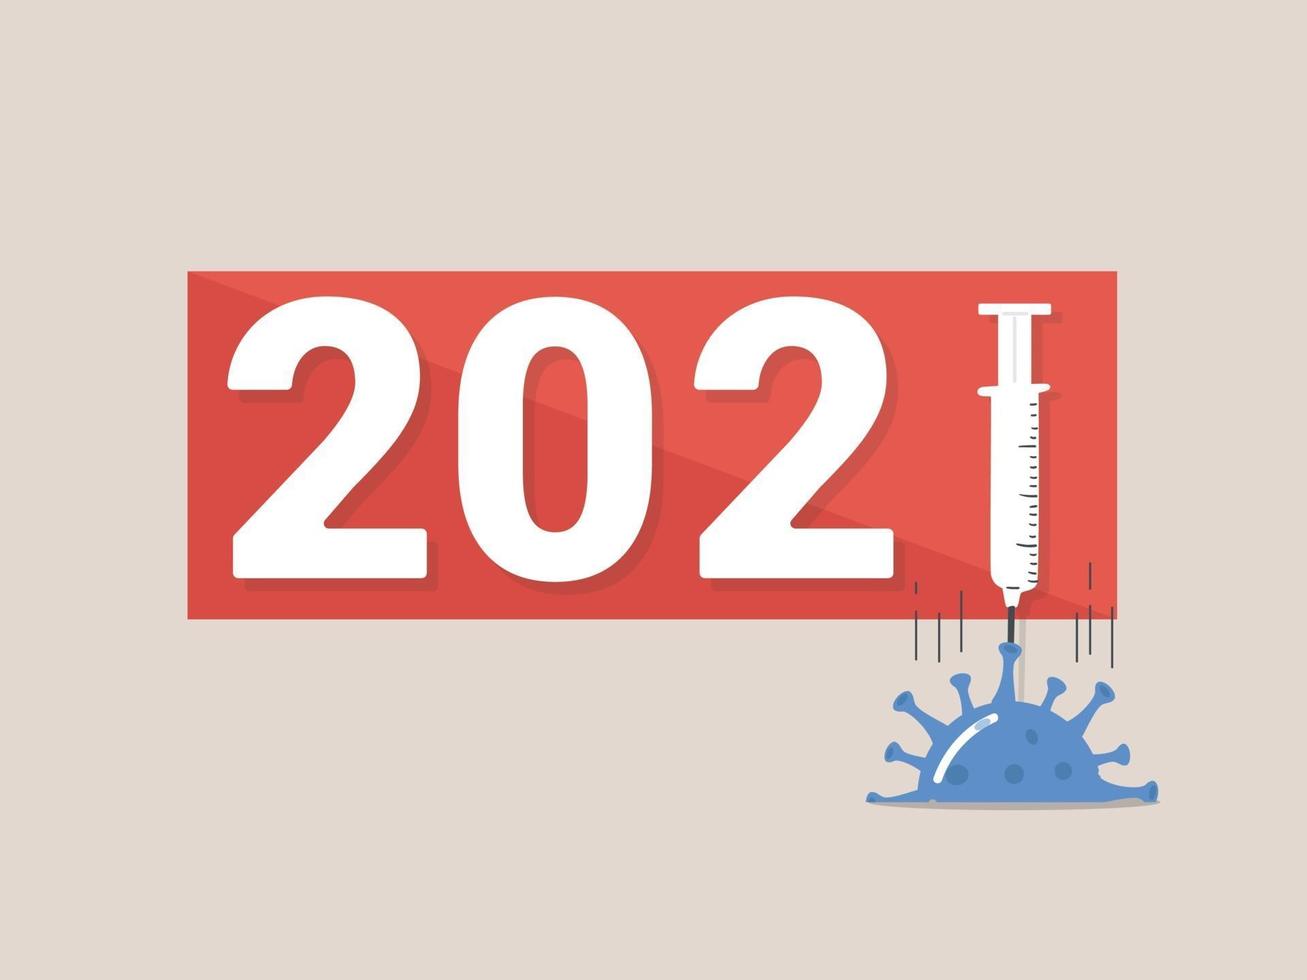 2021 año. Vacuna covid-19, la esperanza de recibir una vacuna para el 2021. Terminar la pandemia del covid en 2021. Vacuna contra la pandemia del coronavirus. vector